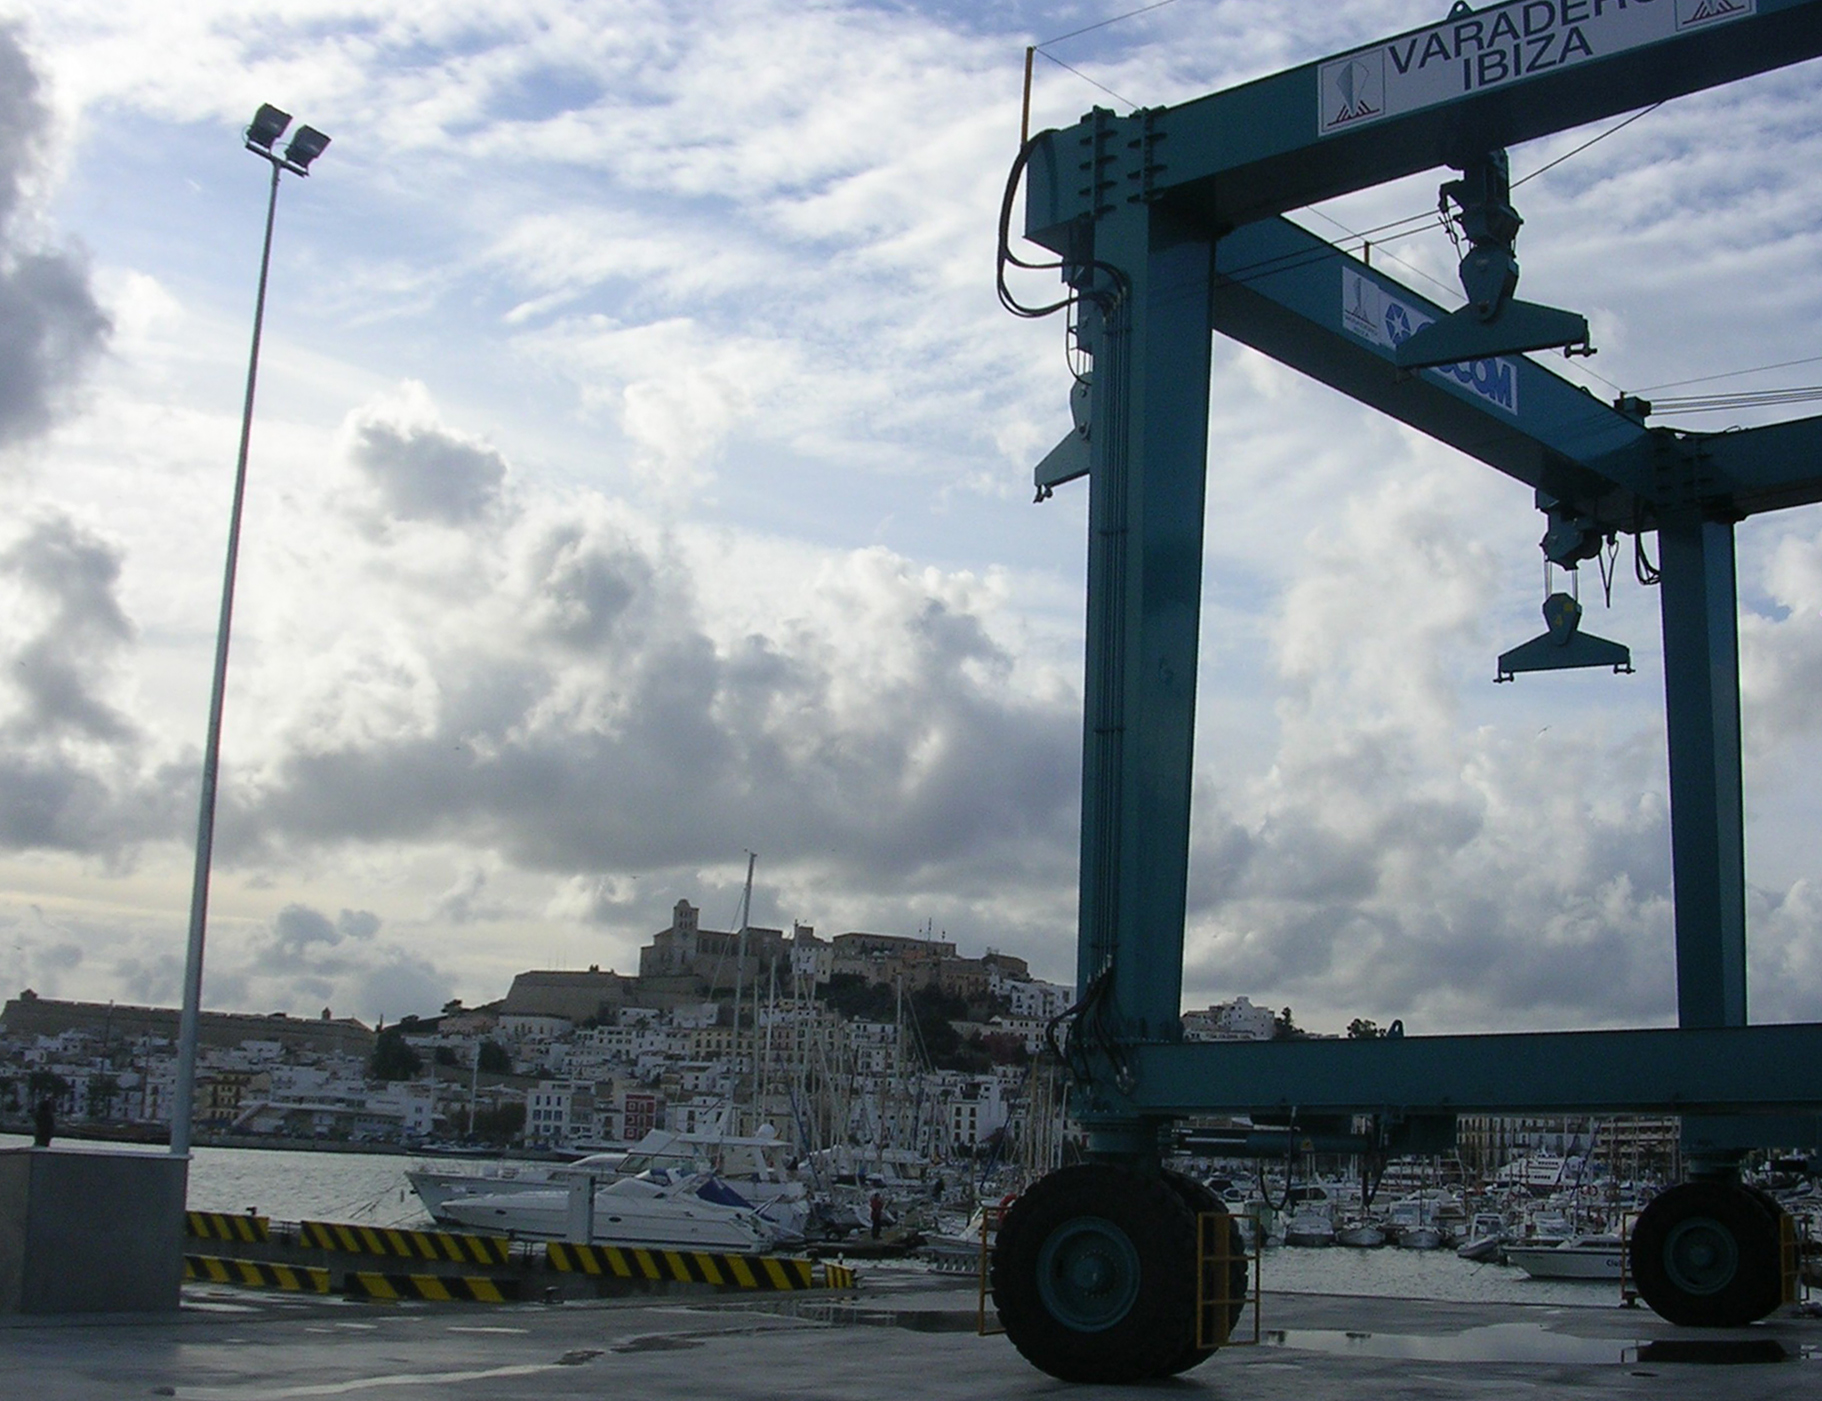 Das Unternehmen Varadero Ibiza wird für seine guten Umweltpraktiken bonifiziert.